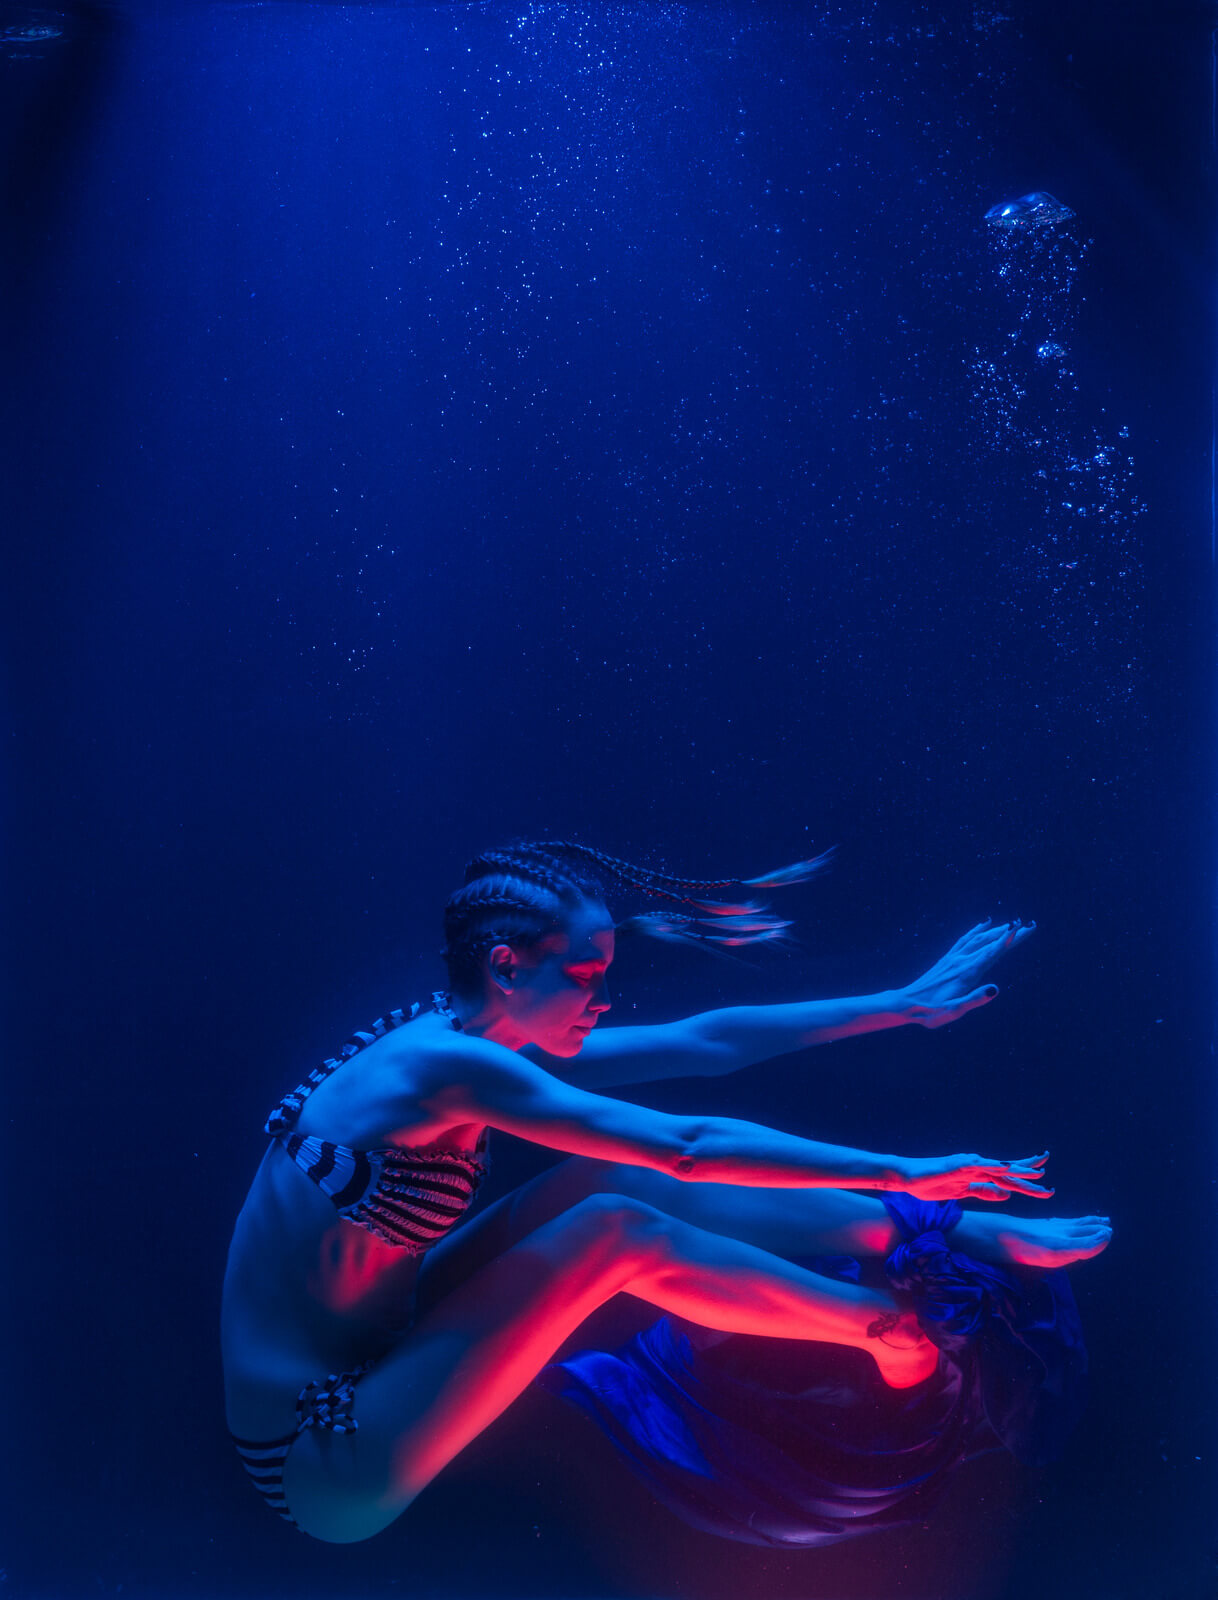 Photo of Woman Swimming Underwater - iPhone camera burst mode